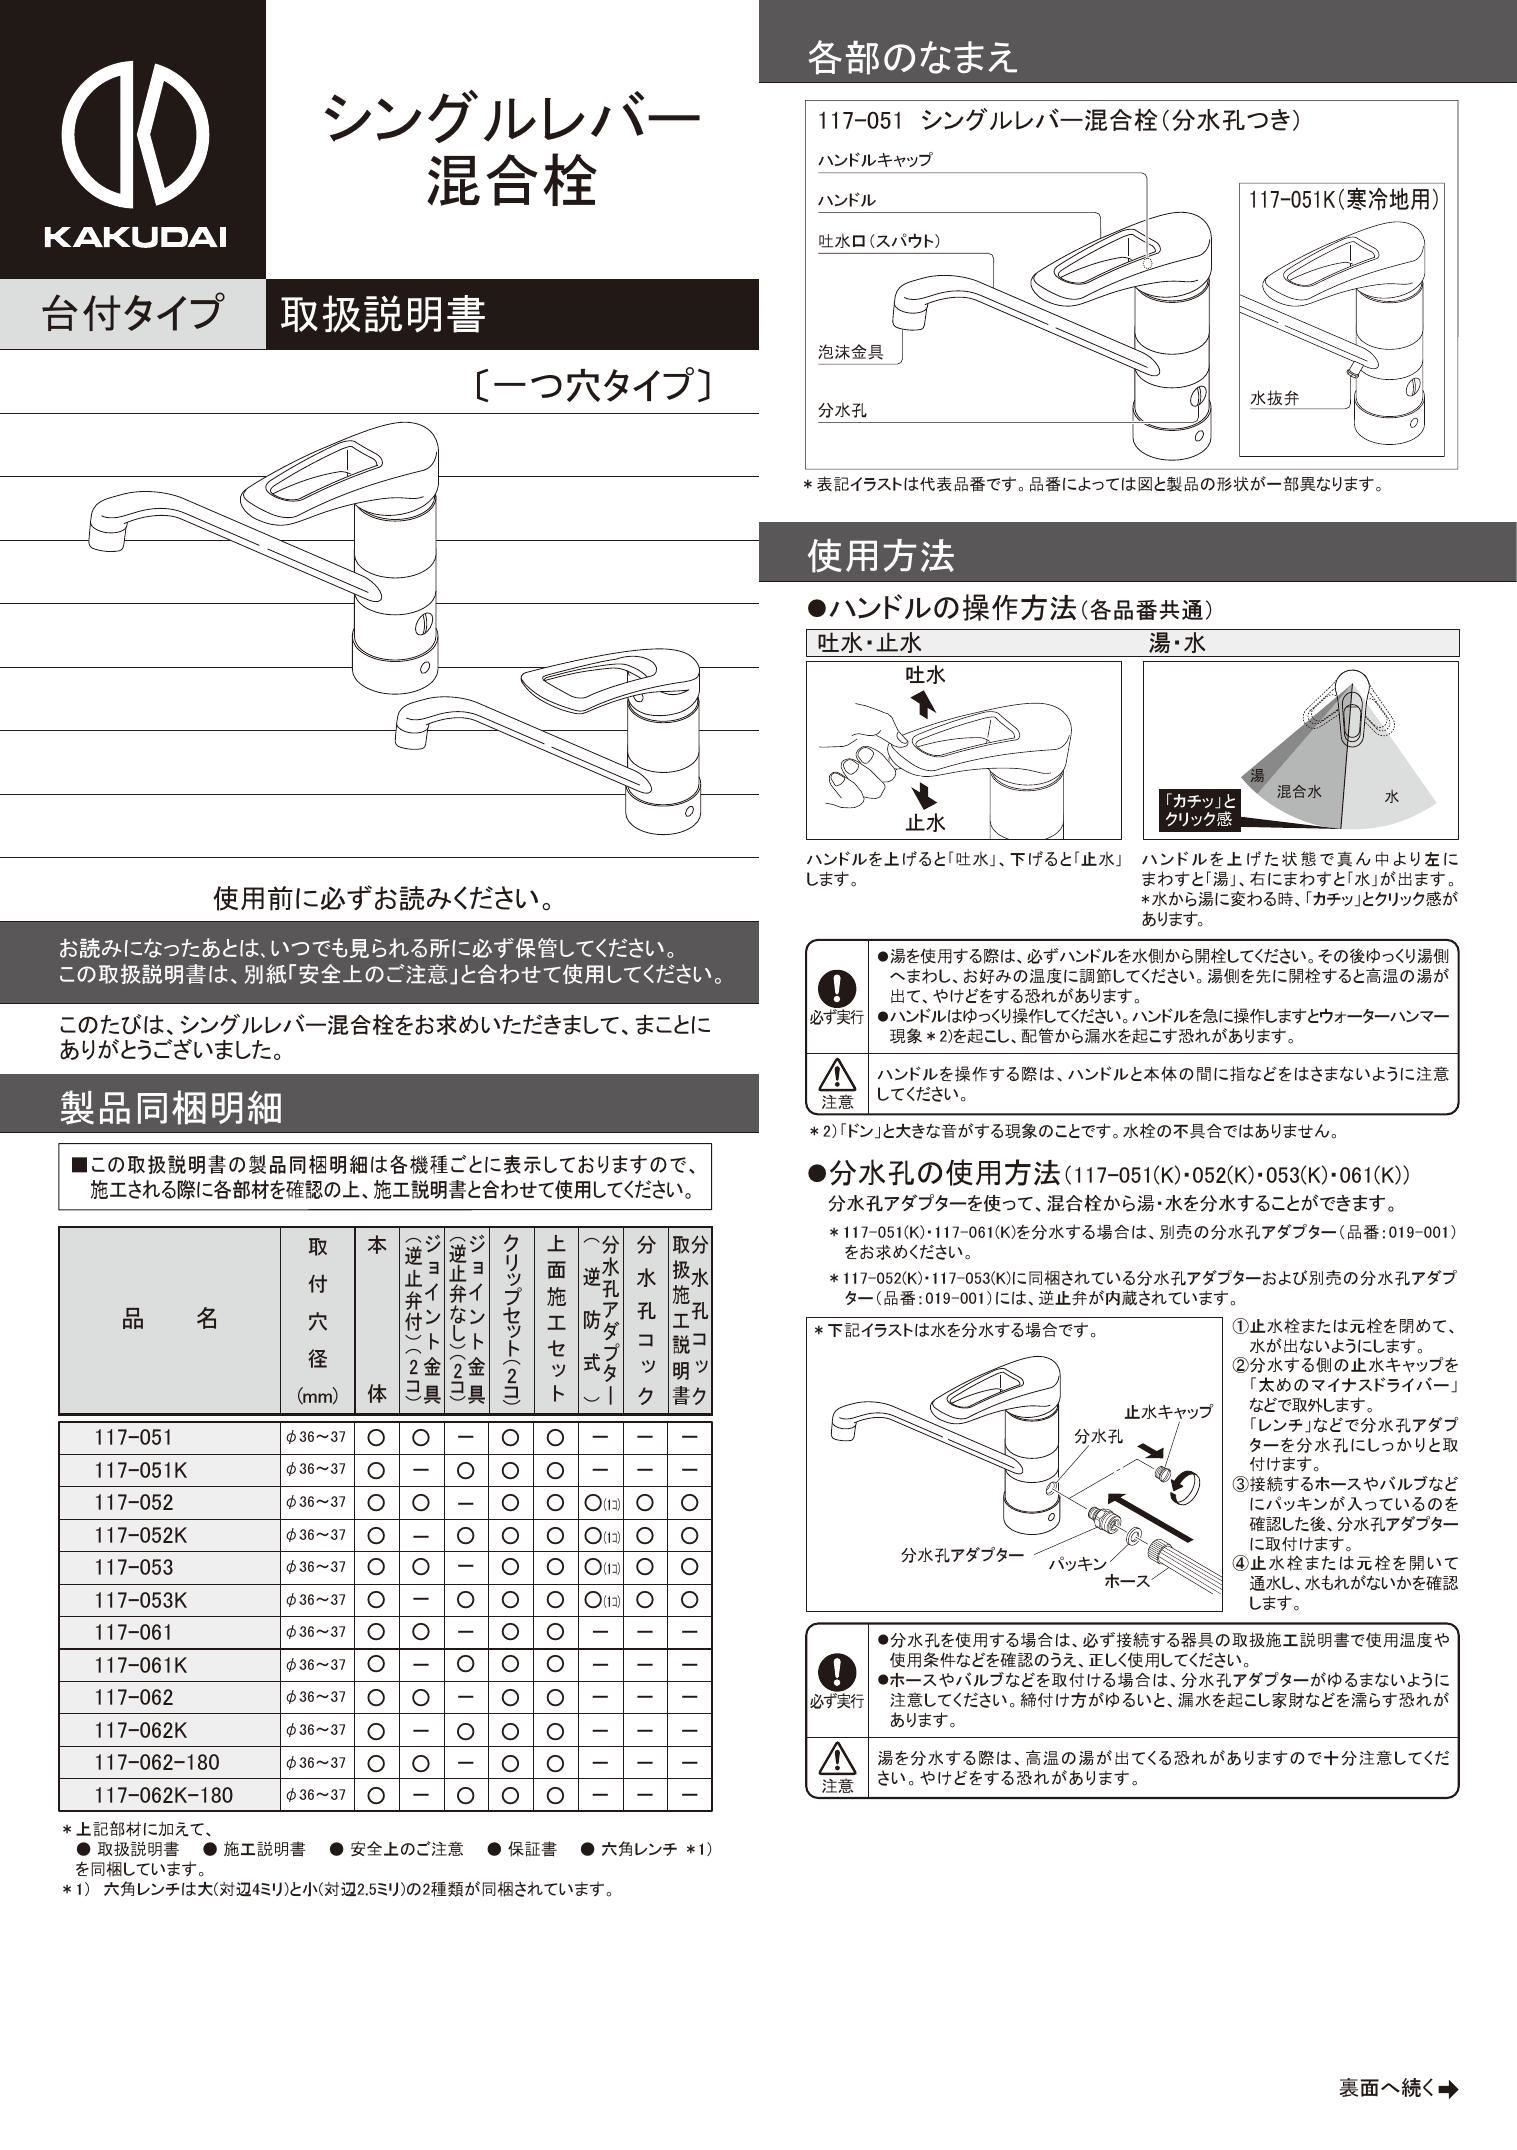 返品不可】 カクダイ KAKUDAI 117-062 シングルレバー混合栓